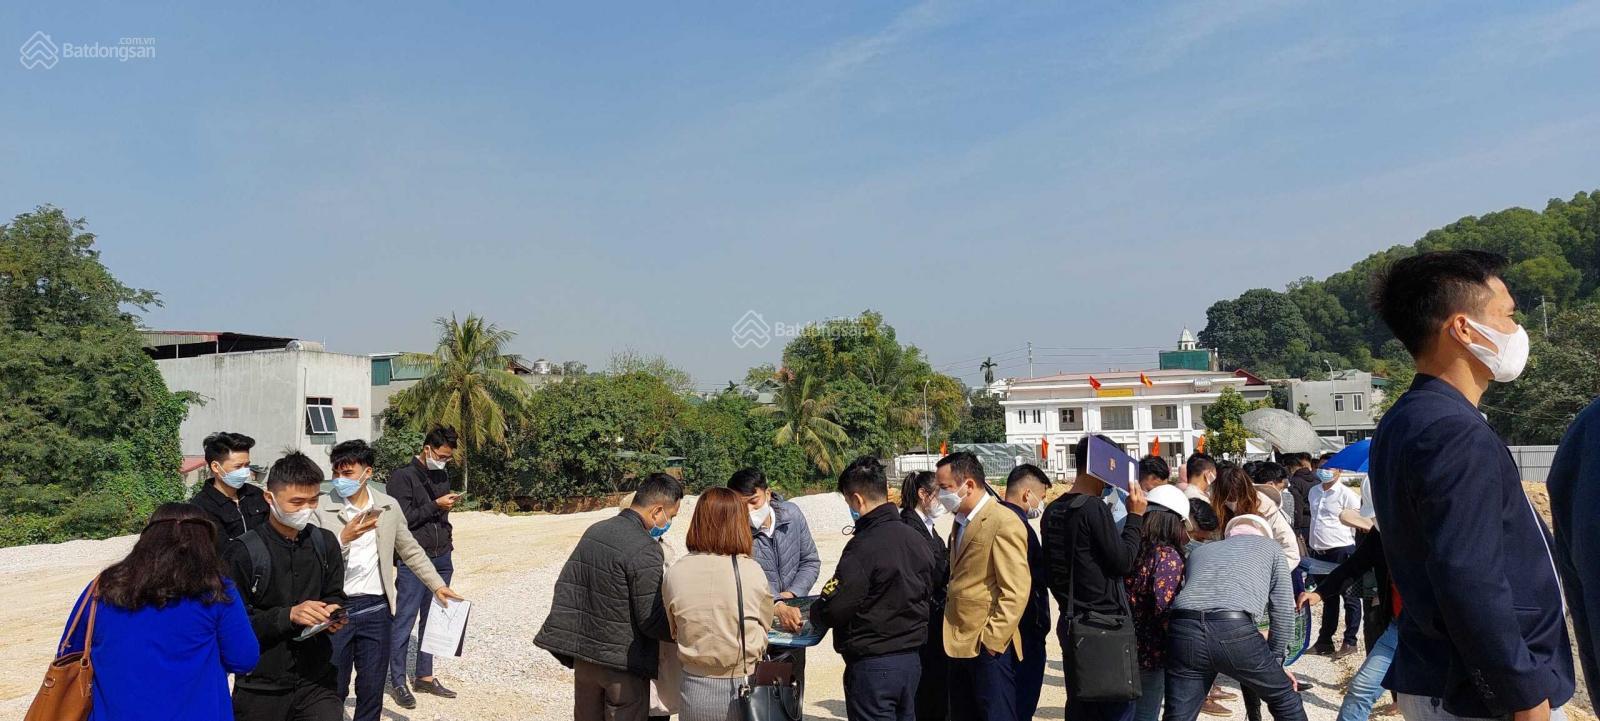 Cơ hội đầu tư đất nền với 280tr (15%) tại thủ phủ KCN Bỉm Sơn - Thanh Hoá